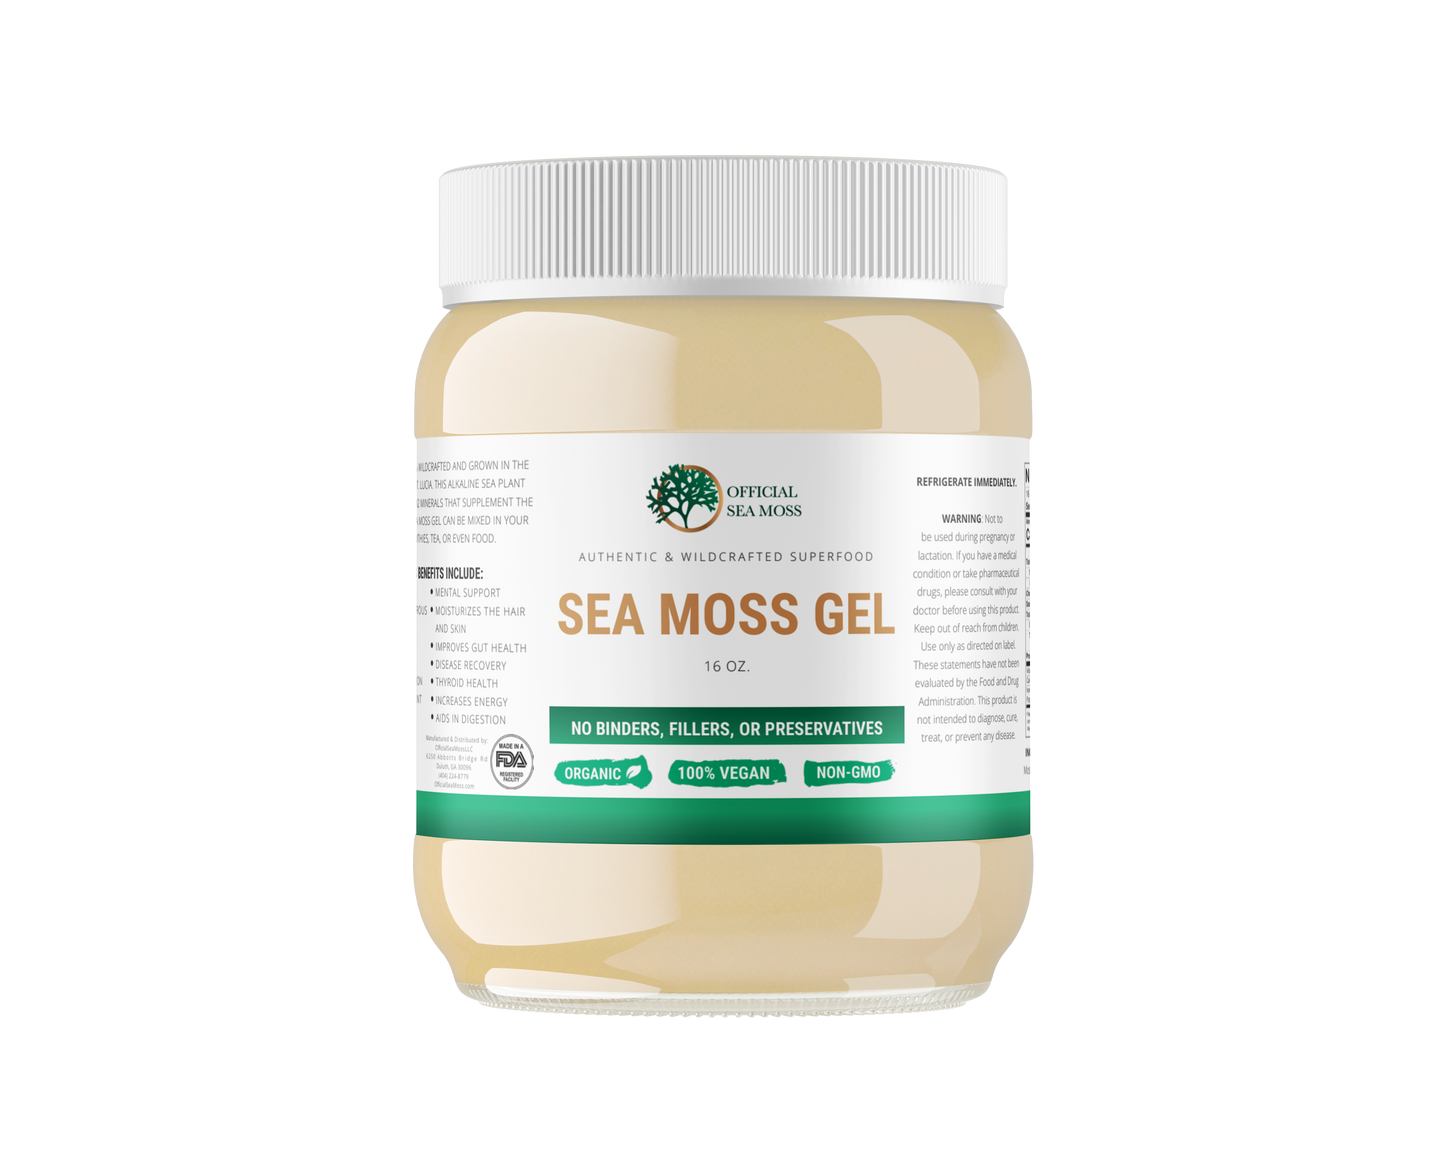 Dr. Sebi's "Inspired" Sea Moss Gel